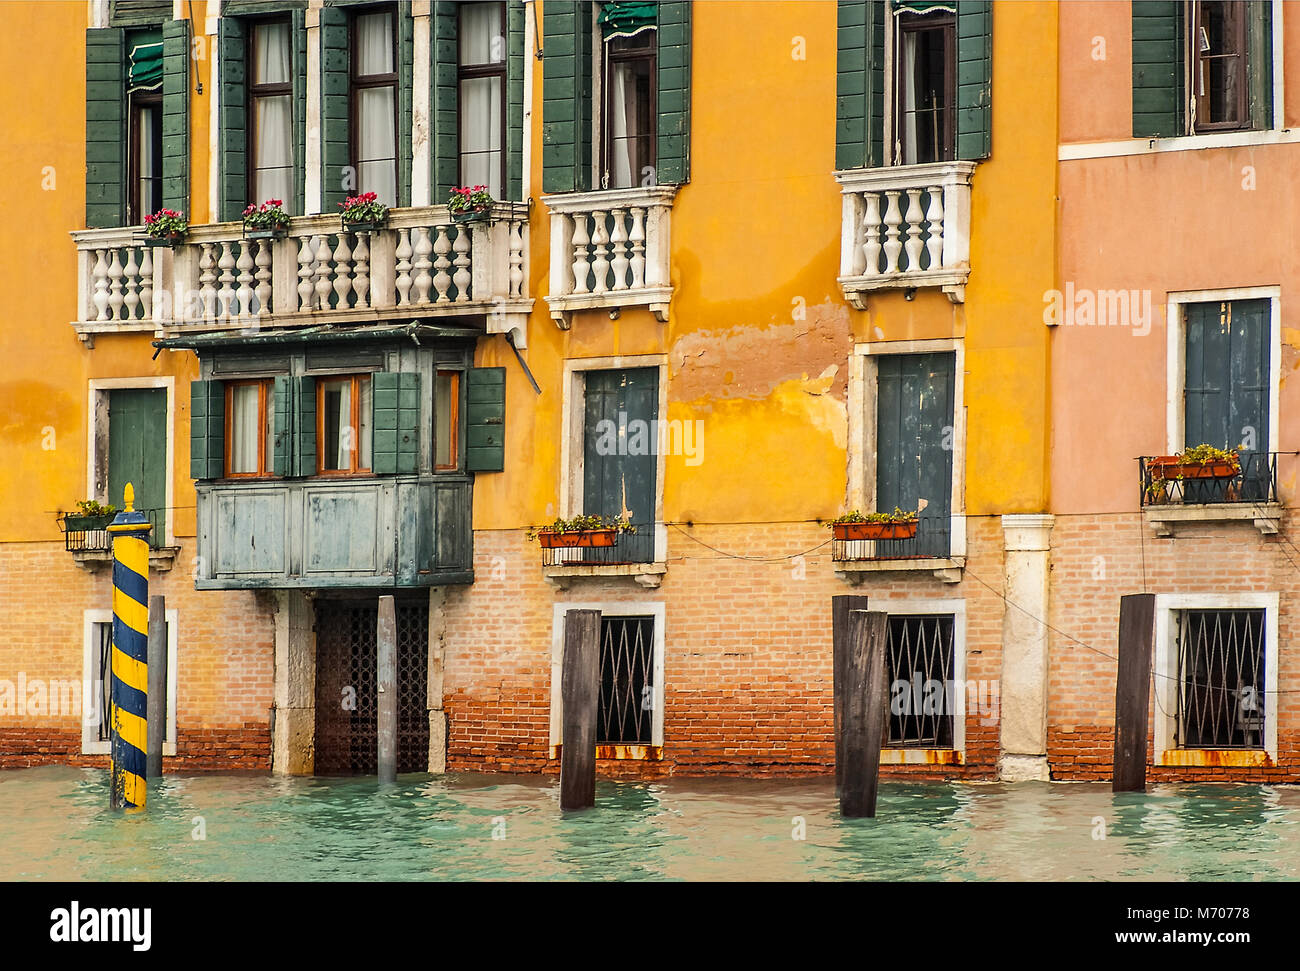 Acqua Alta in Venice,Italy Stock Photo